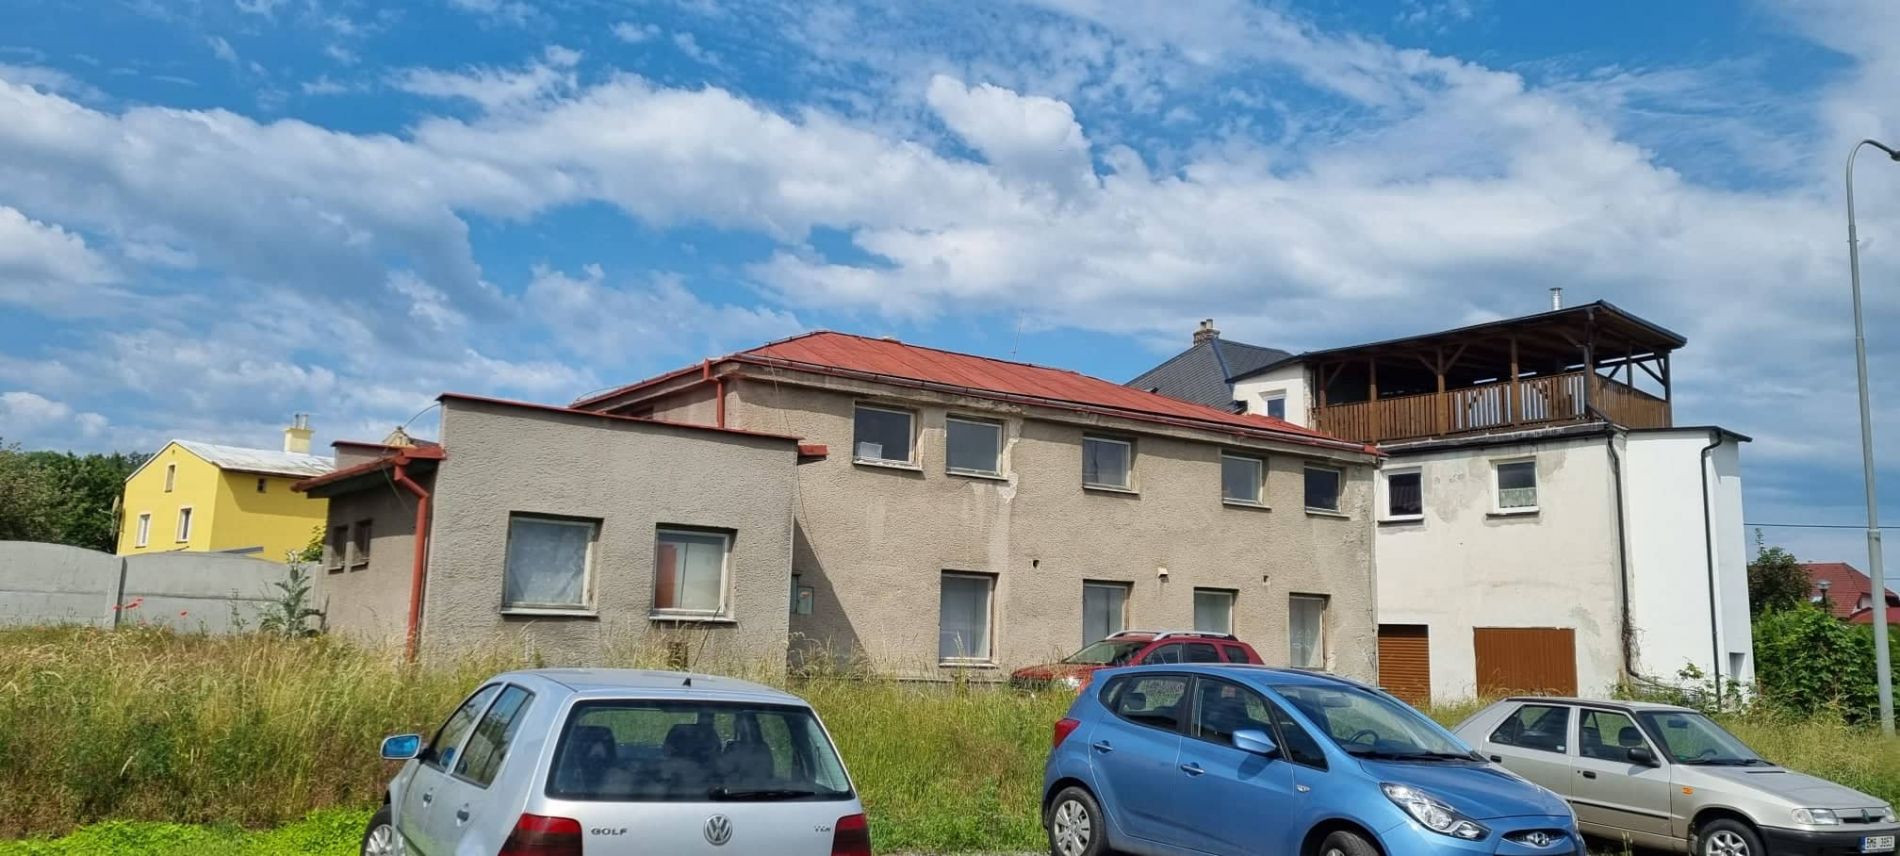 Prodej domu ( stavby občanského vybavení) na ul. Jánošíkova v Javorníku, obrázek č. 1